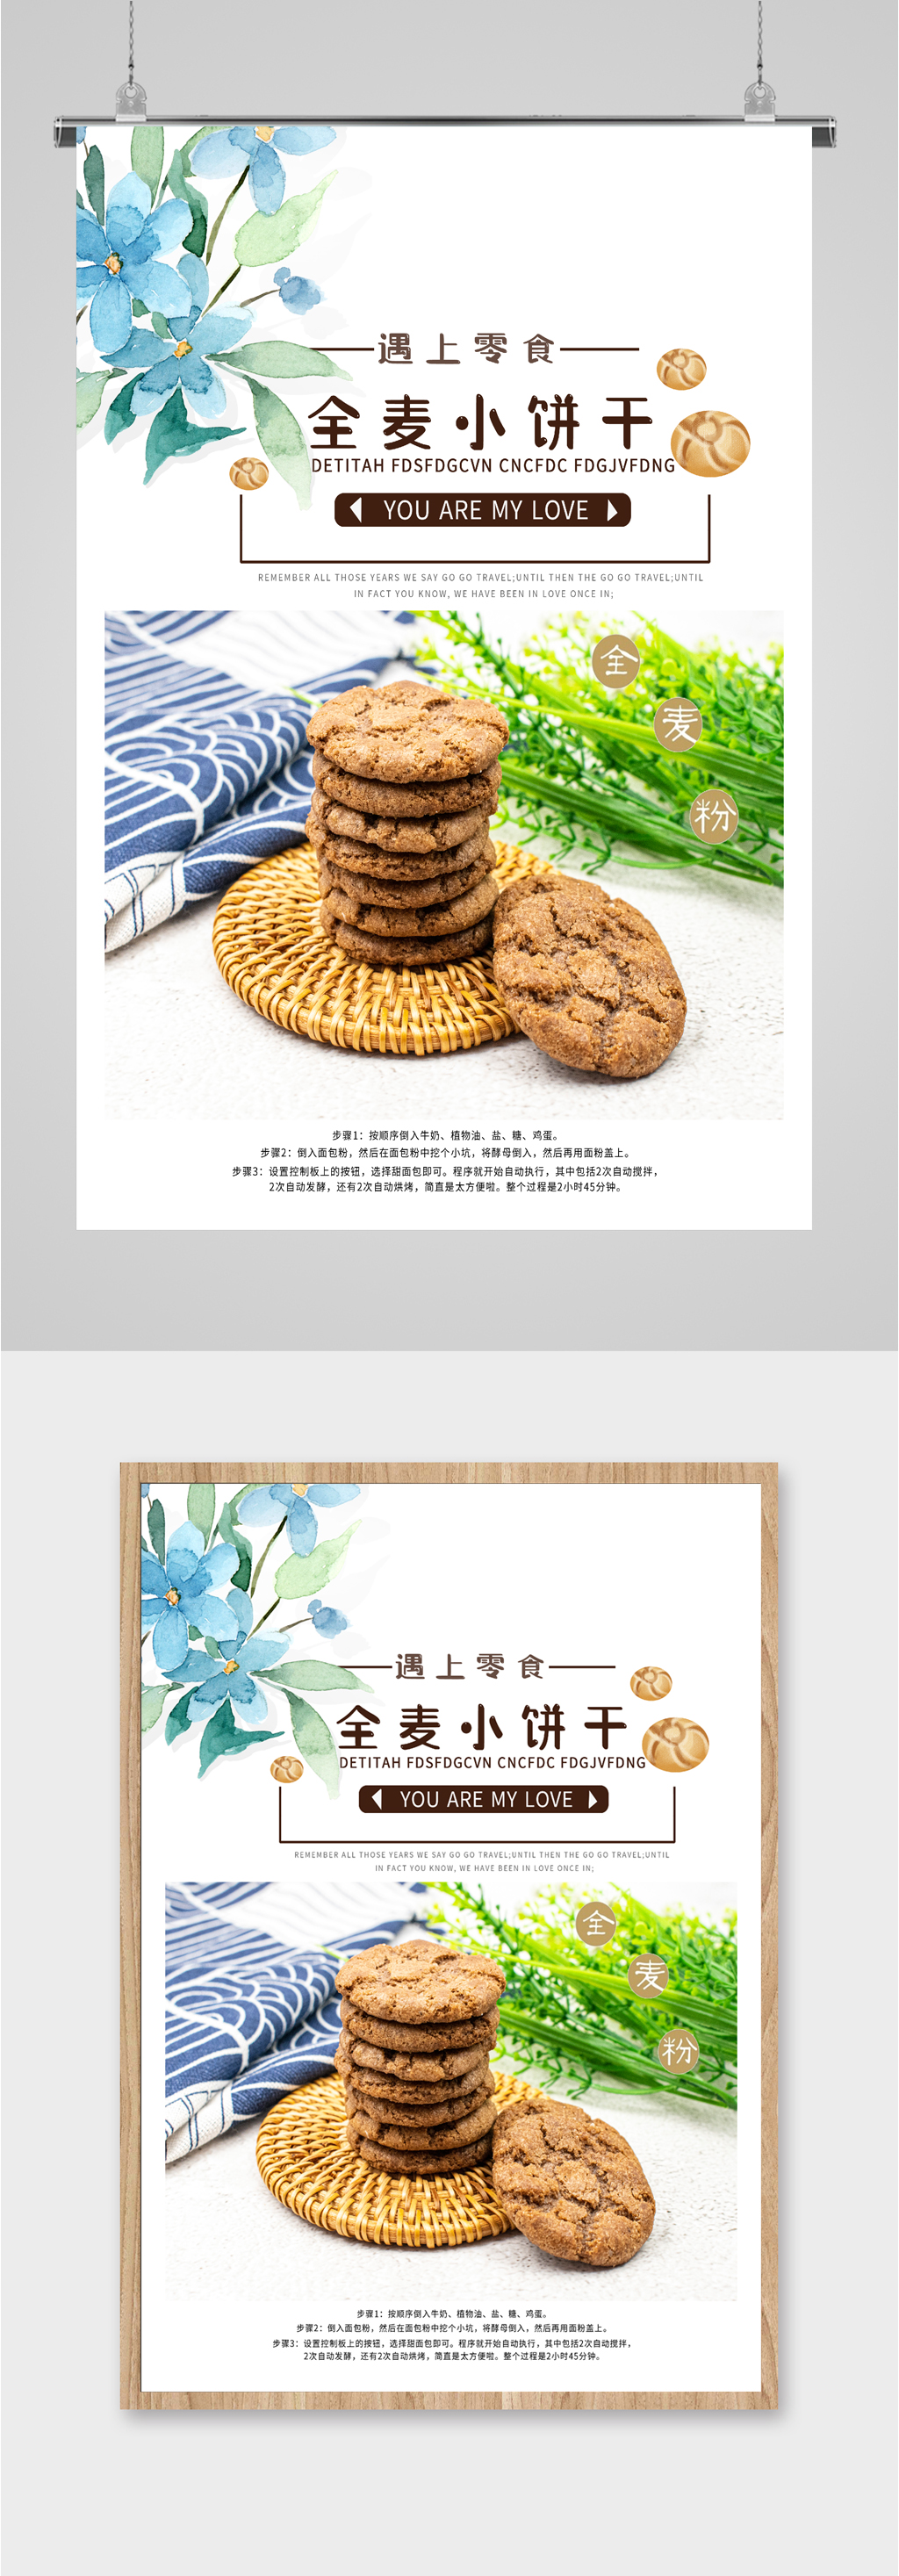 提供视觉美观的全麦饼干小零食海报素材下载,本次作品主题是平面广告